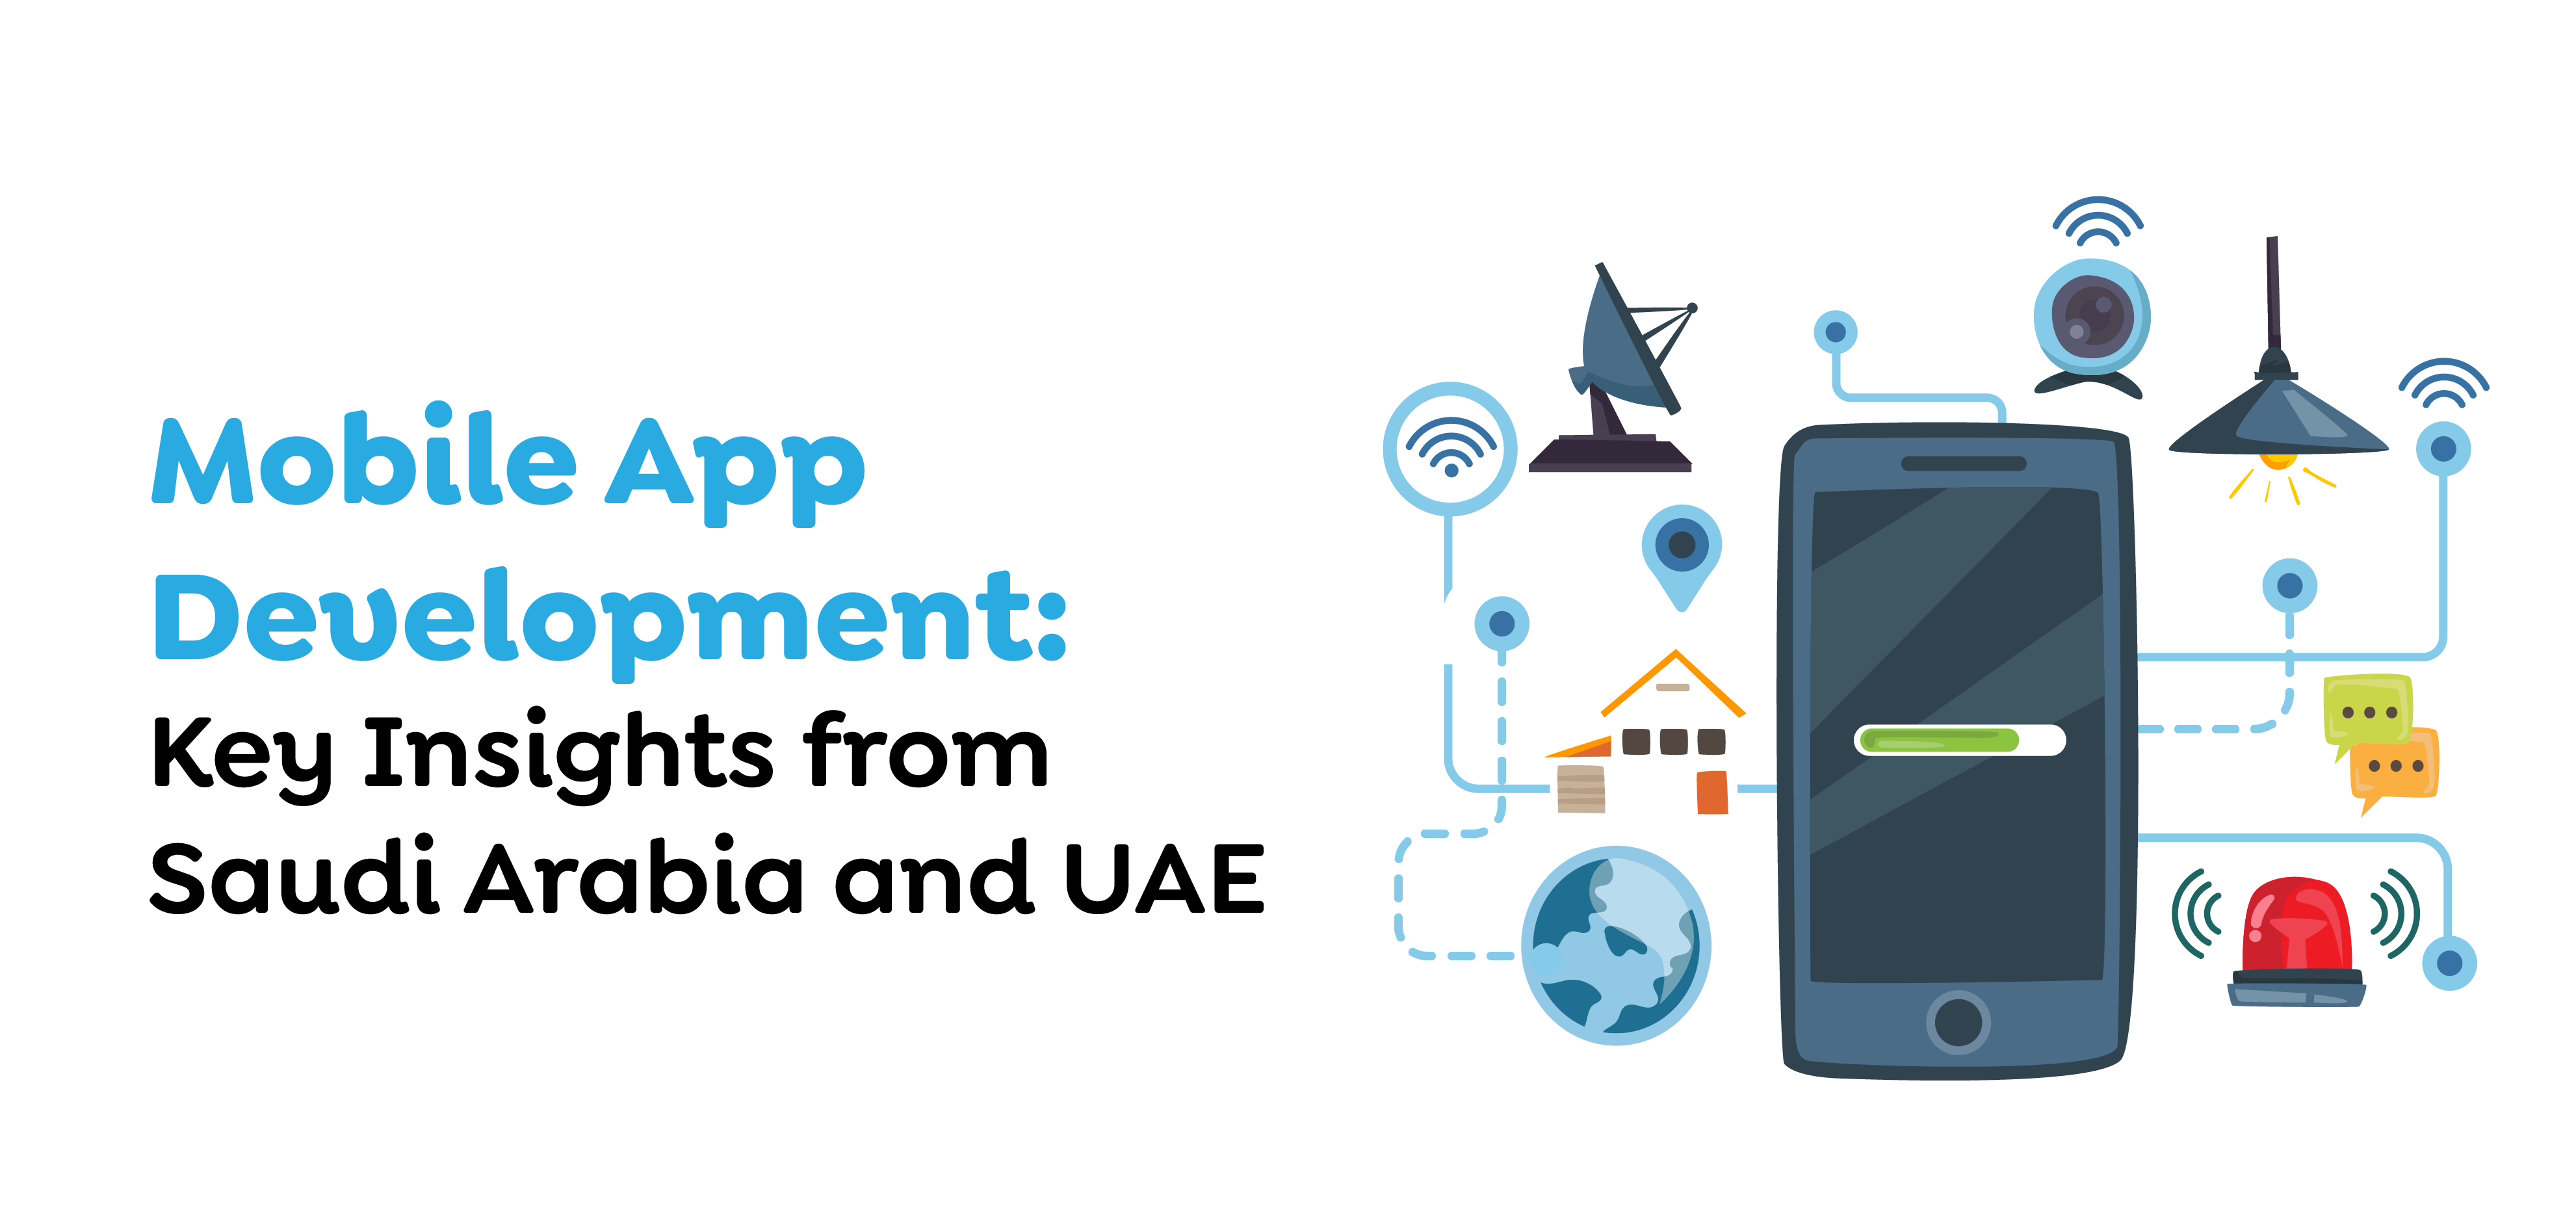 Mobile App Development in Saudi Arabia